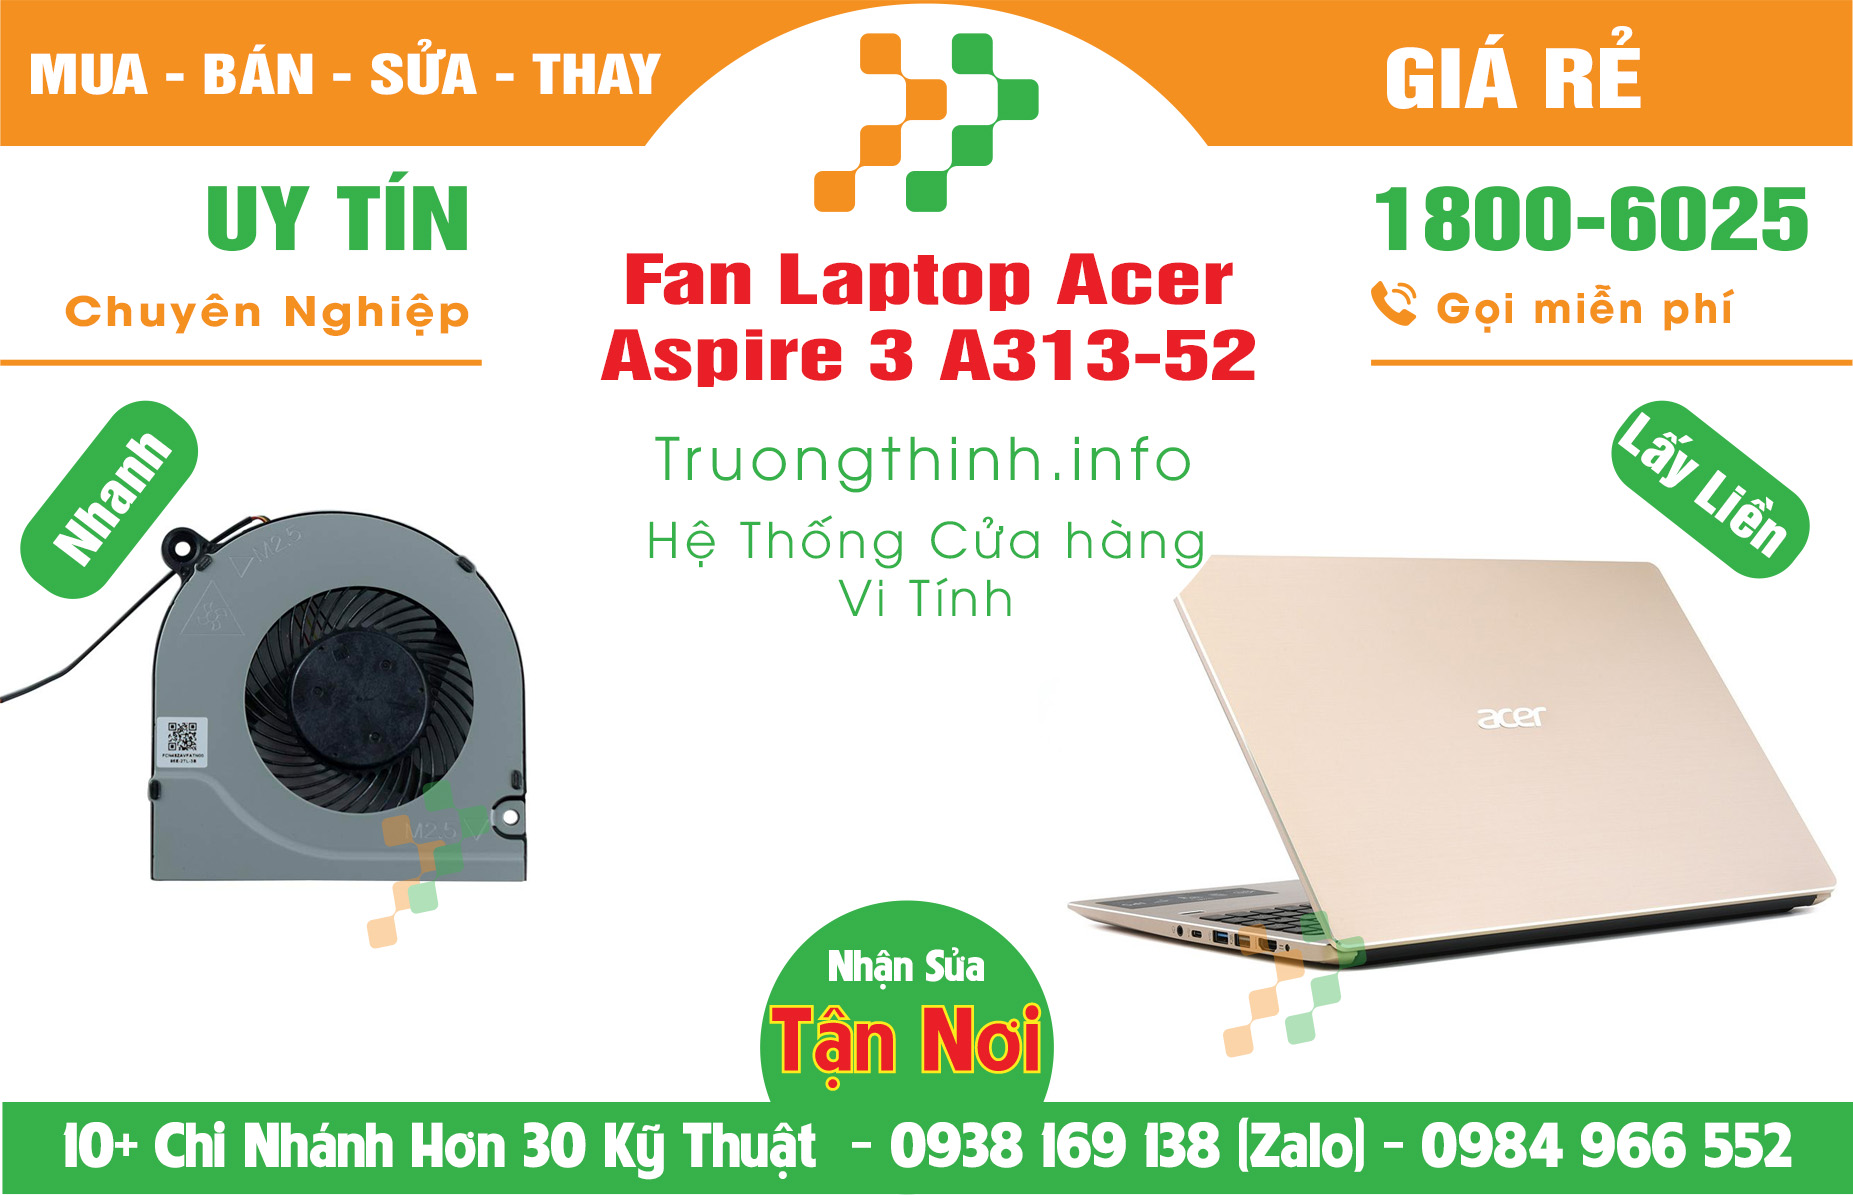 Mua Bán Vỏ Laptop Acer Aspire 3 A313-52 Giá Rẻ | Máy Tính Trường Thịnh Giá Rẻ